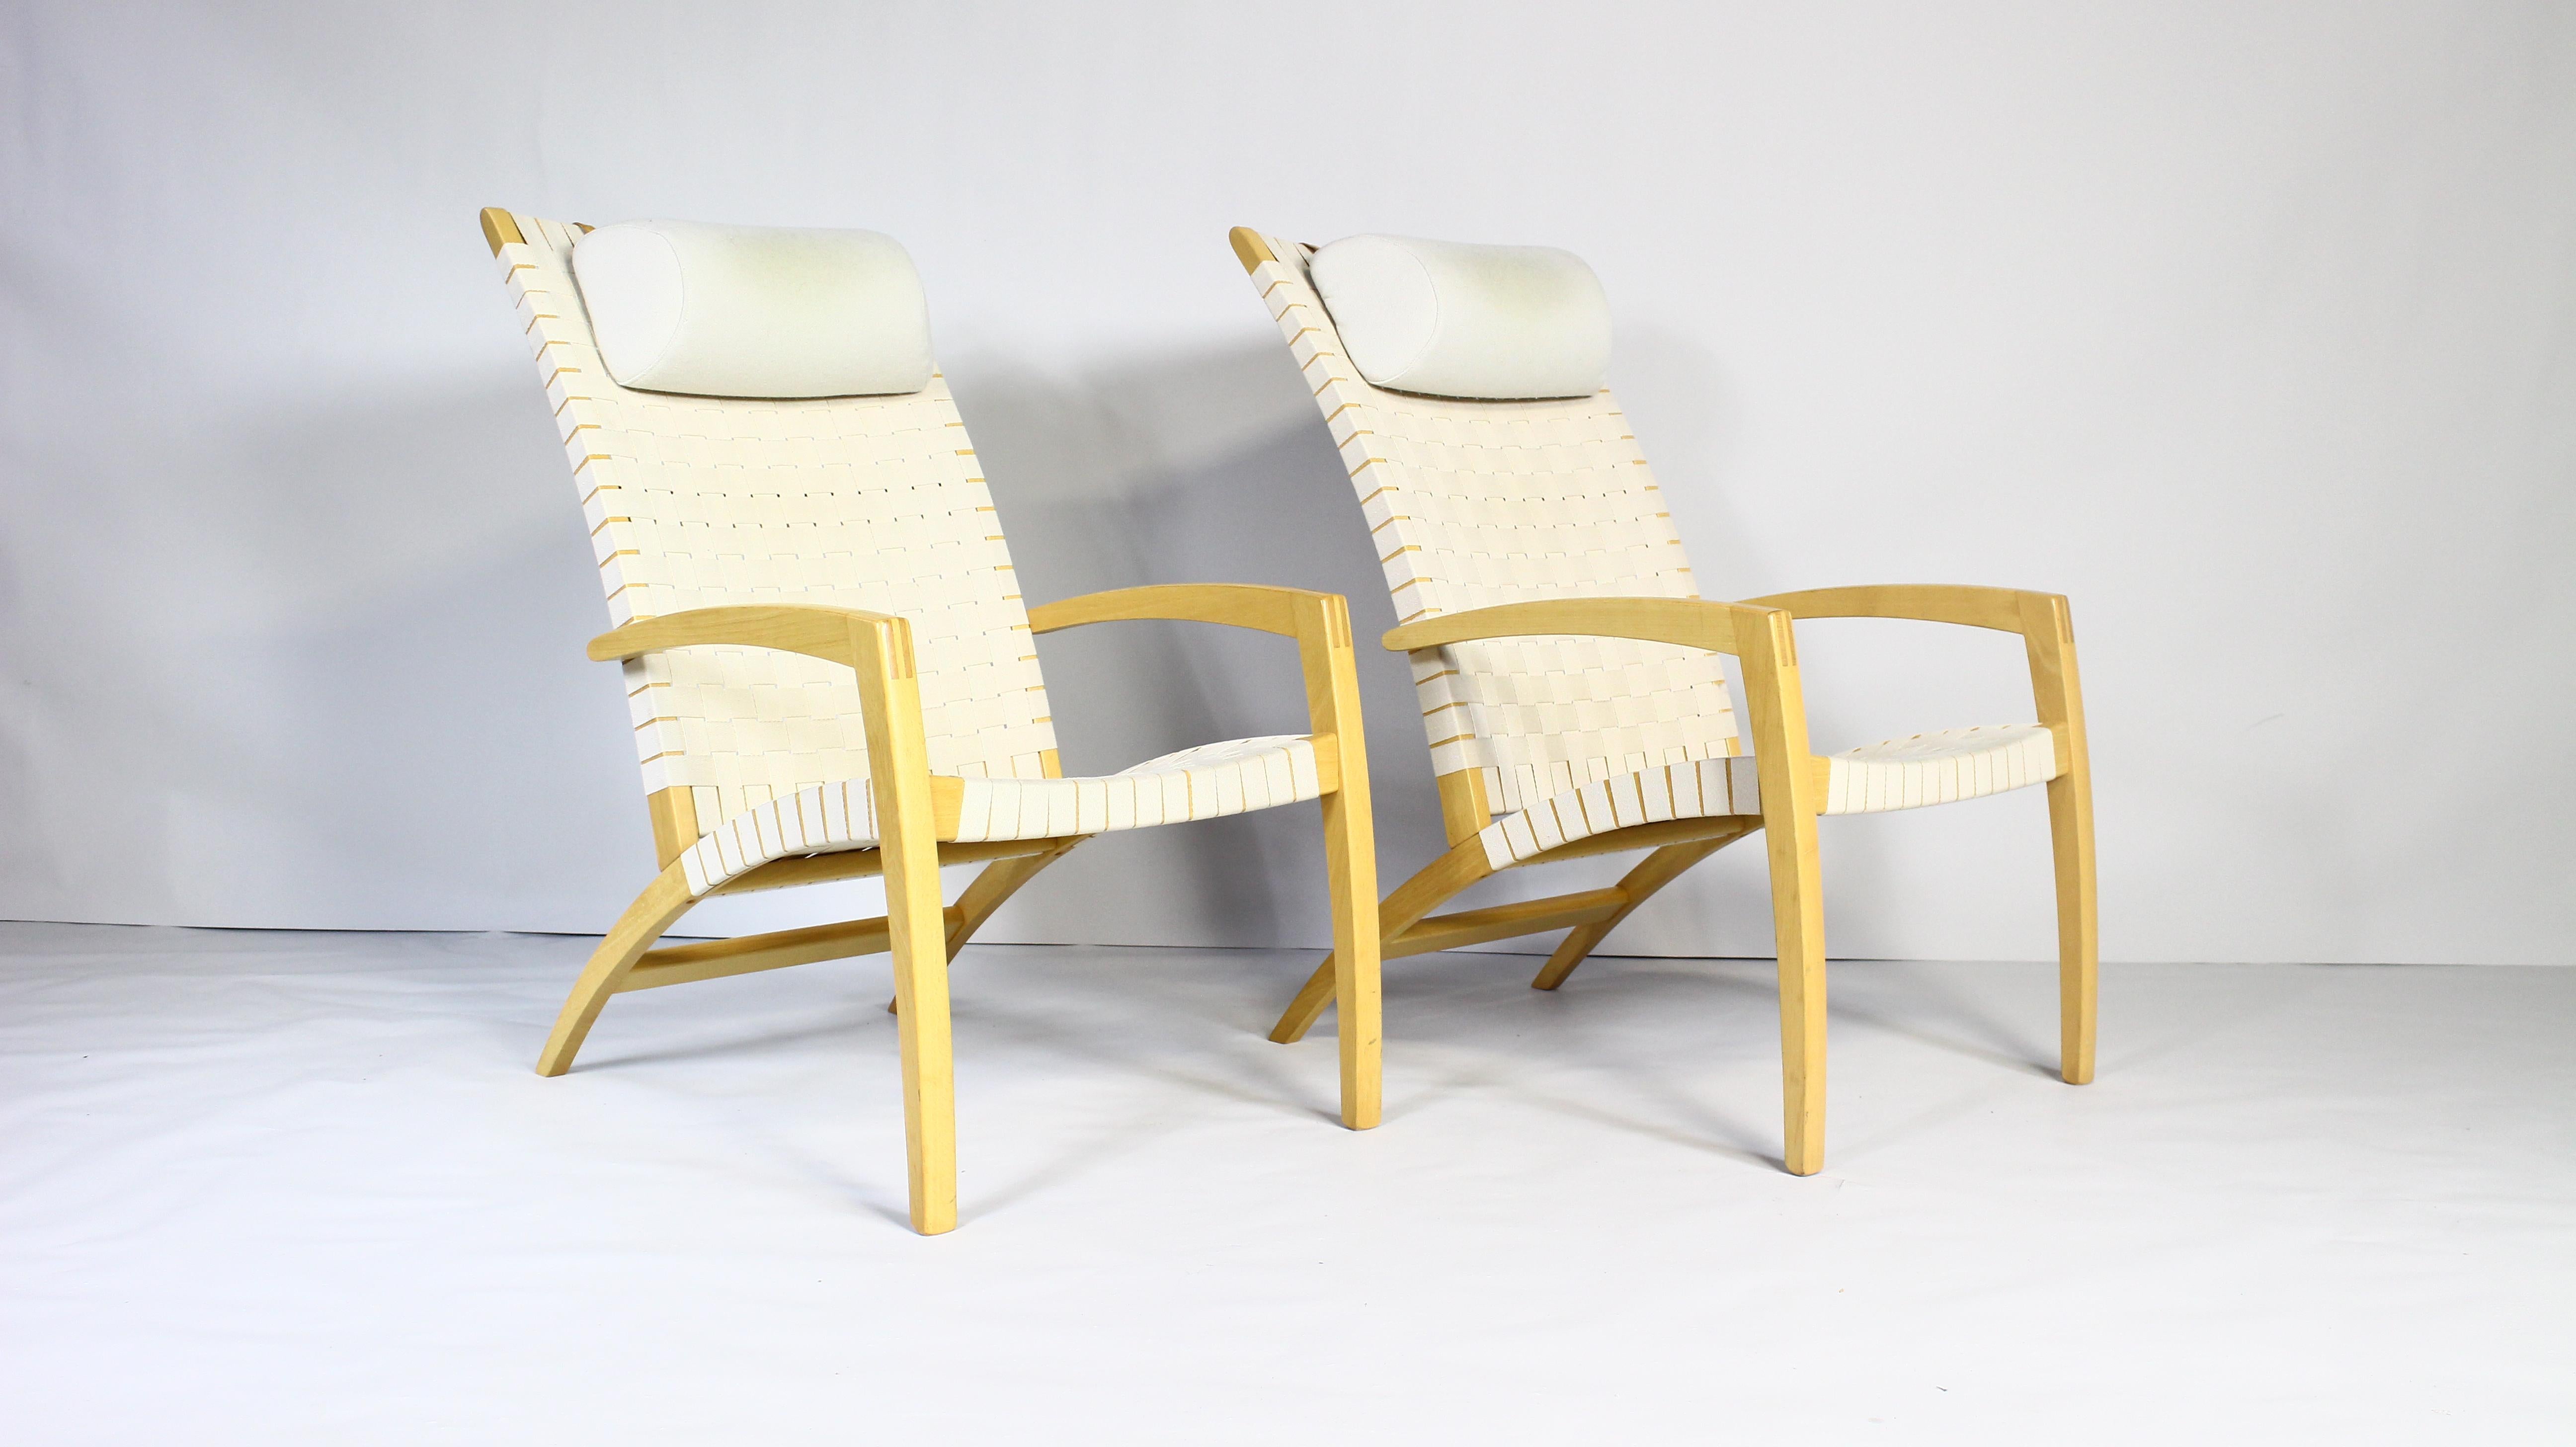 Luna ist der Name dieses leichten und belastbaren Sessels,
entworfen von Morten Gøttler und hergestellt von Findahls Møbelfabrik.
Luna ist mit geflochtenem Gurtband in den Farben Natur ausgestattet.
Preis für 1 Stuhl, verfügbar für 2 Stühle.